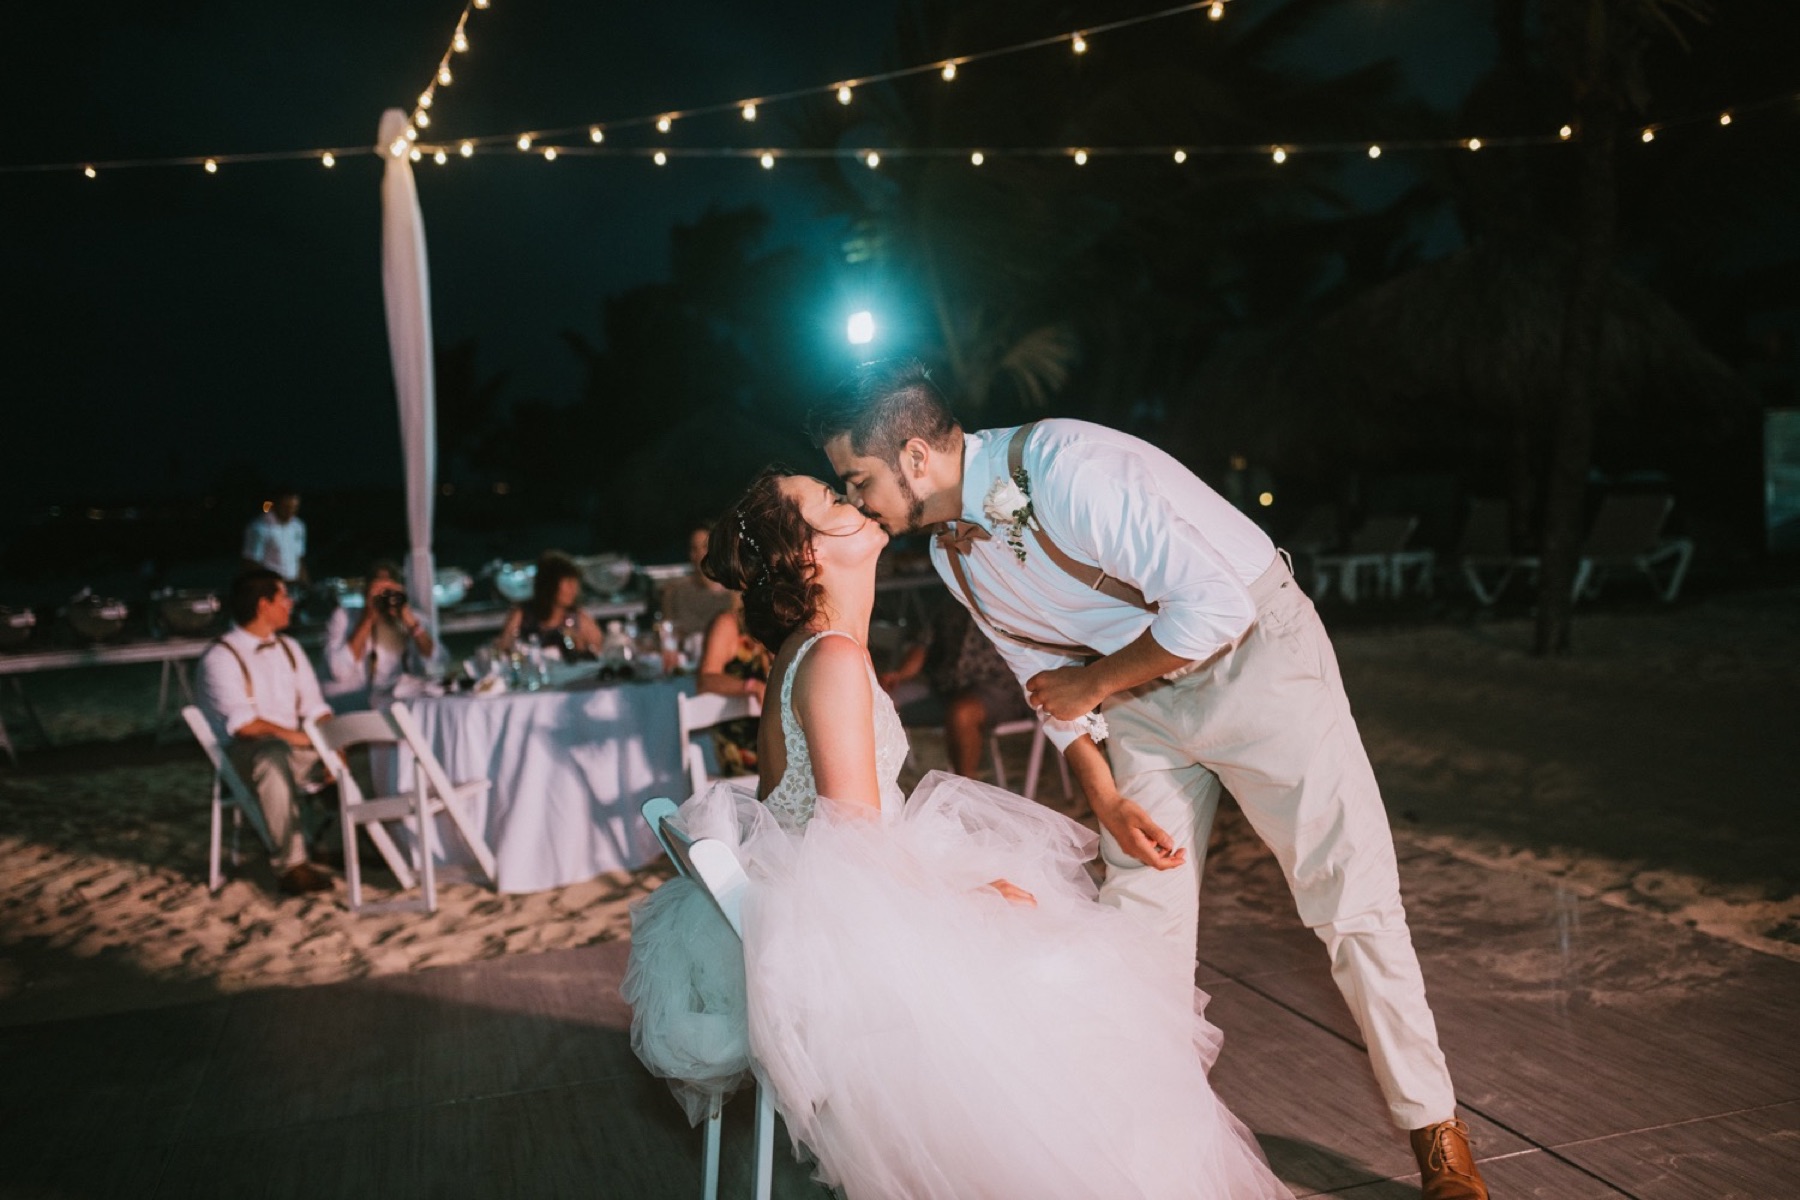 Groom kissing bride after taking garter off her at reception